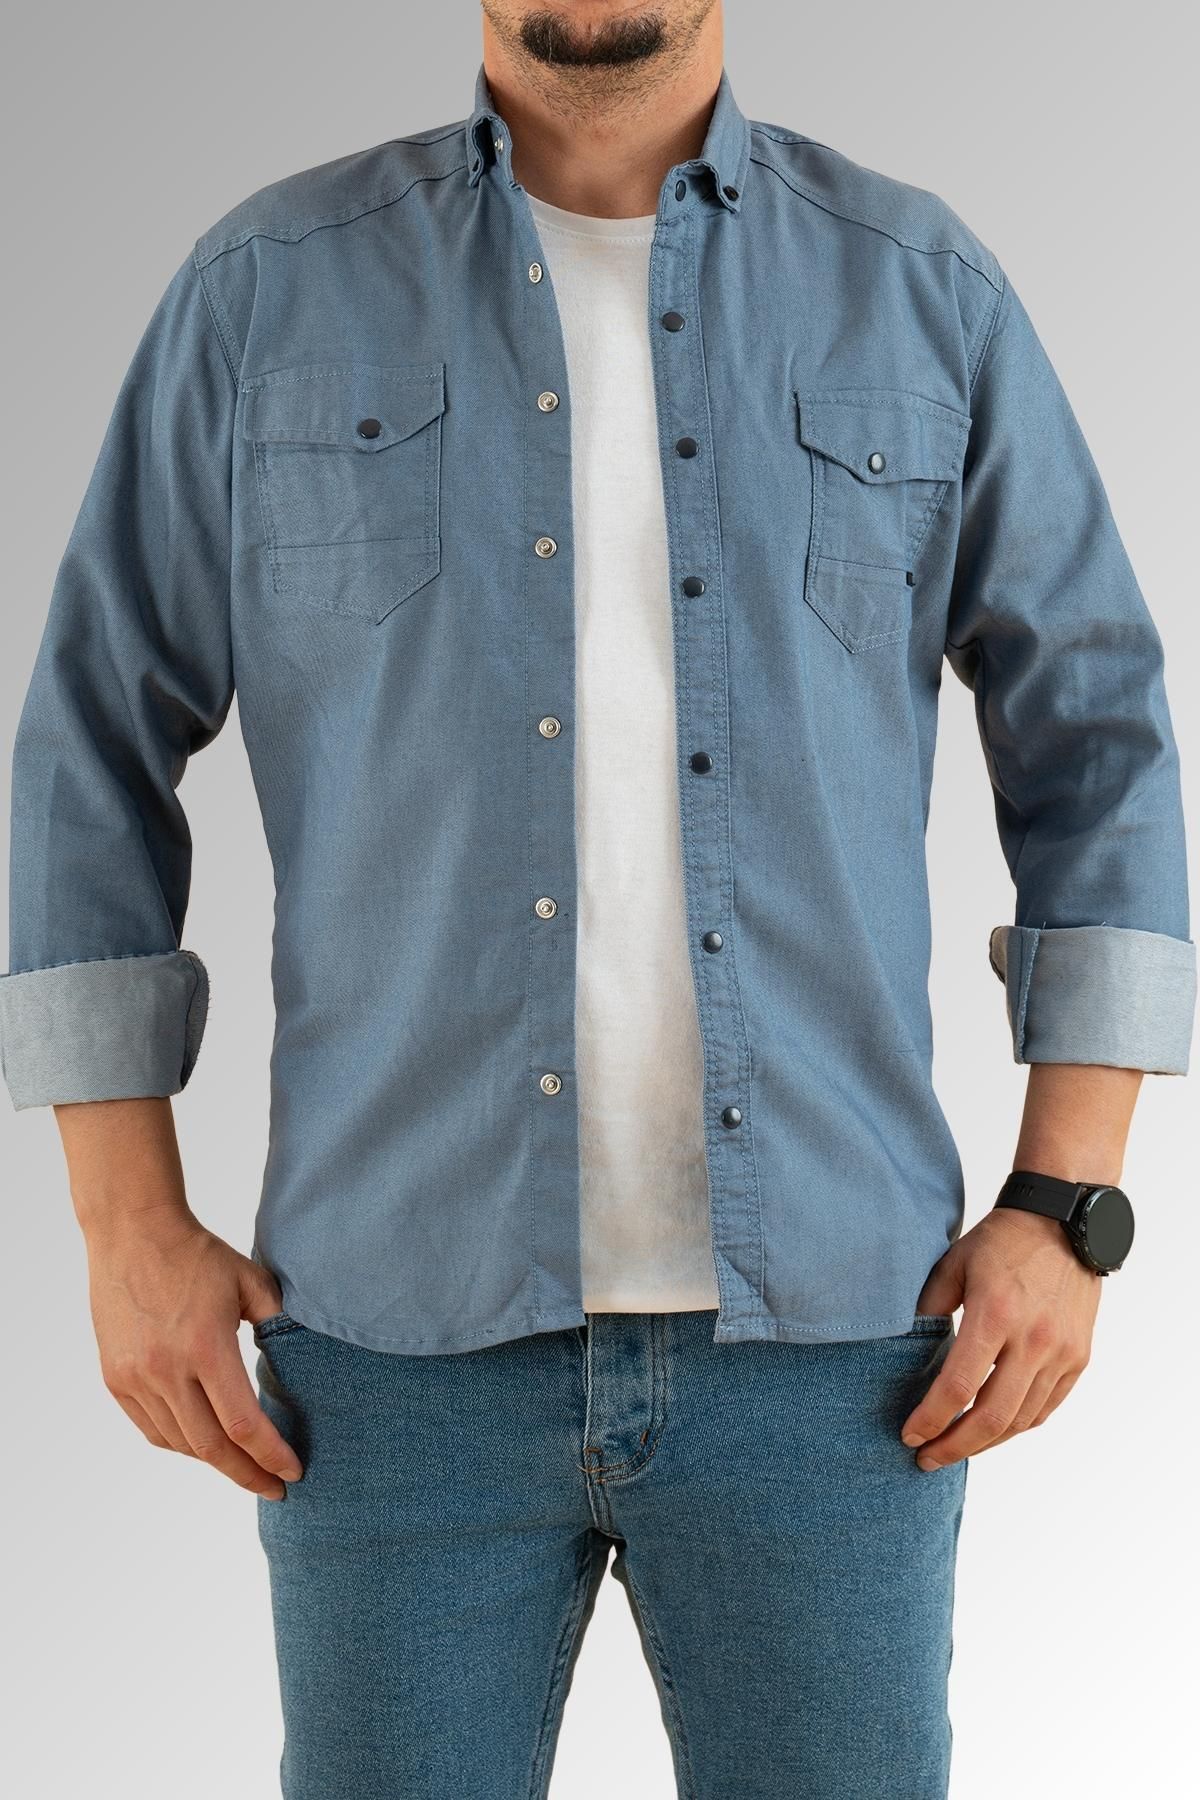 YXC Trend Maker Erkek Mavi Slim Fit Dar Kalıp Pamuklu Kot Gömlek